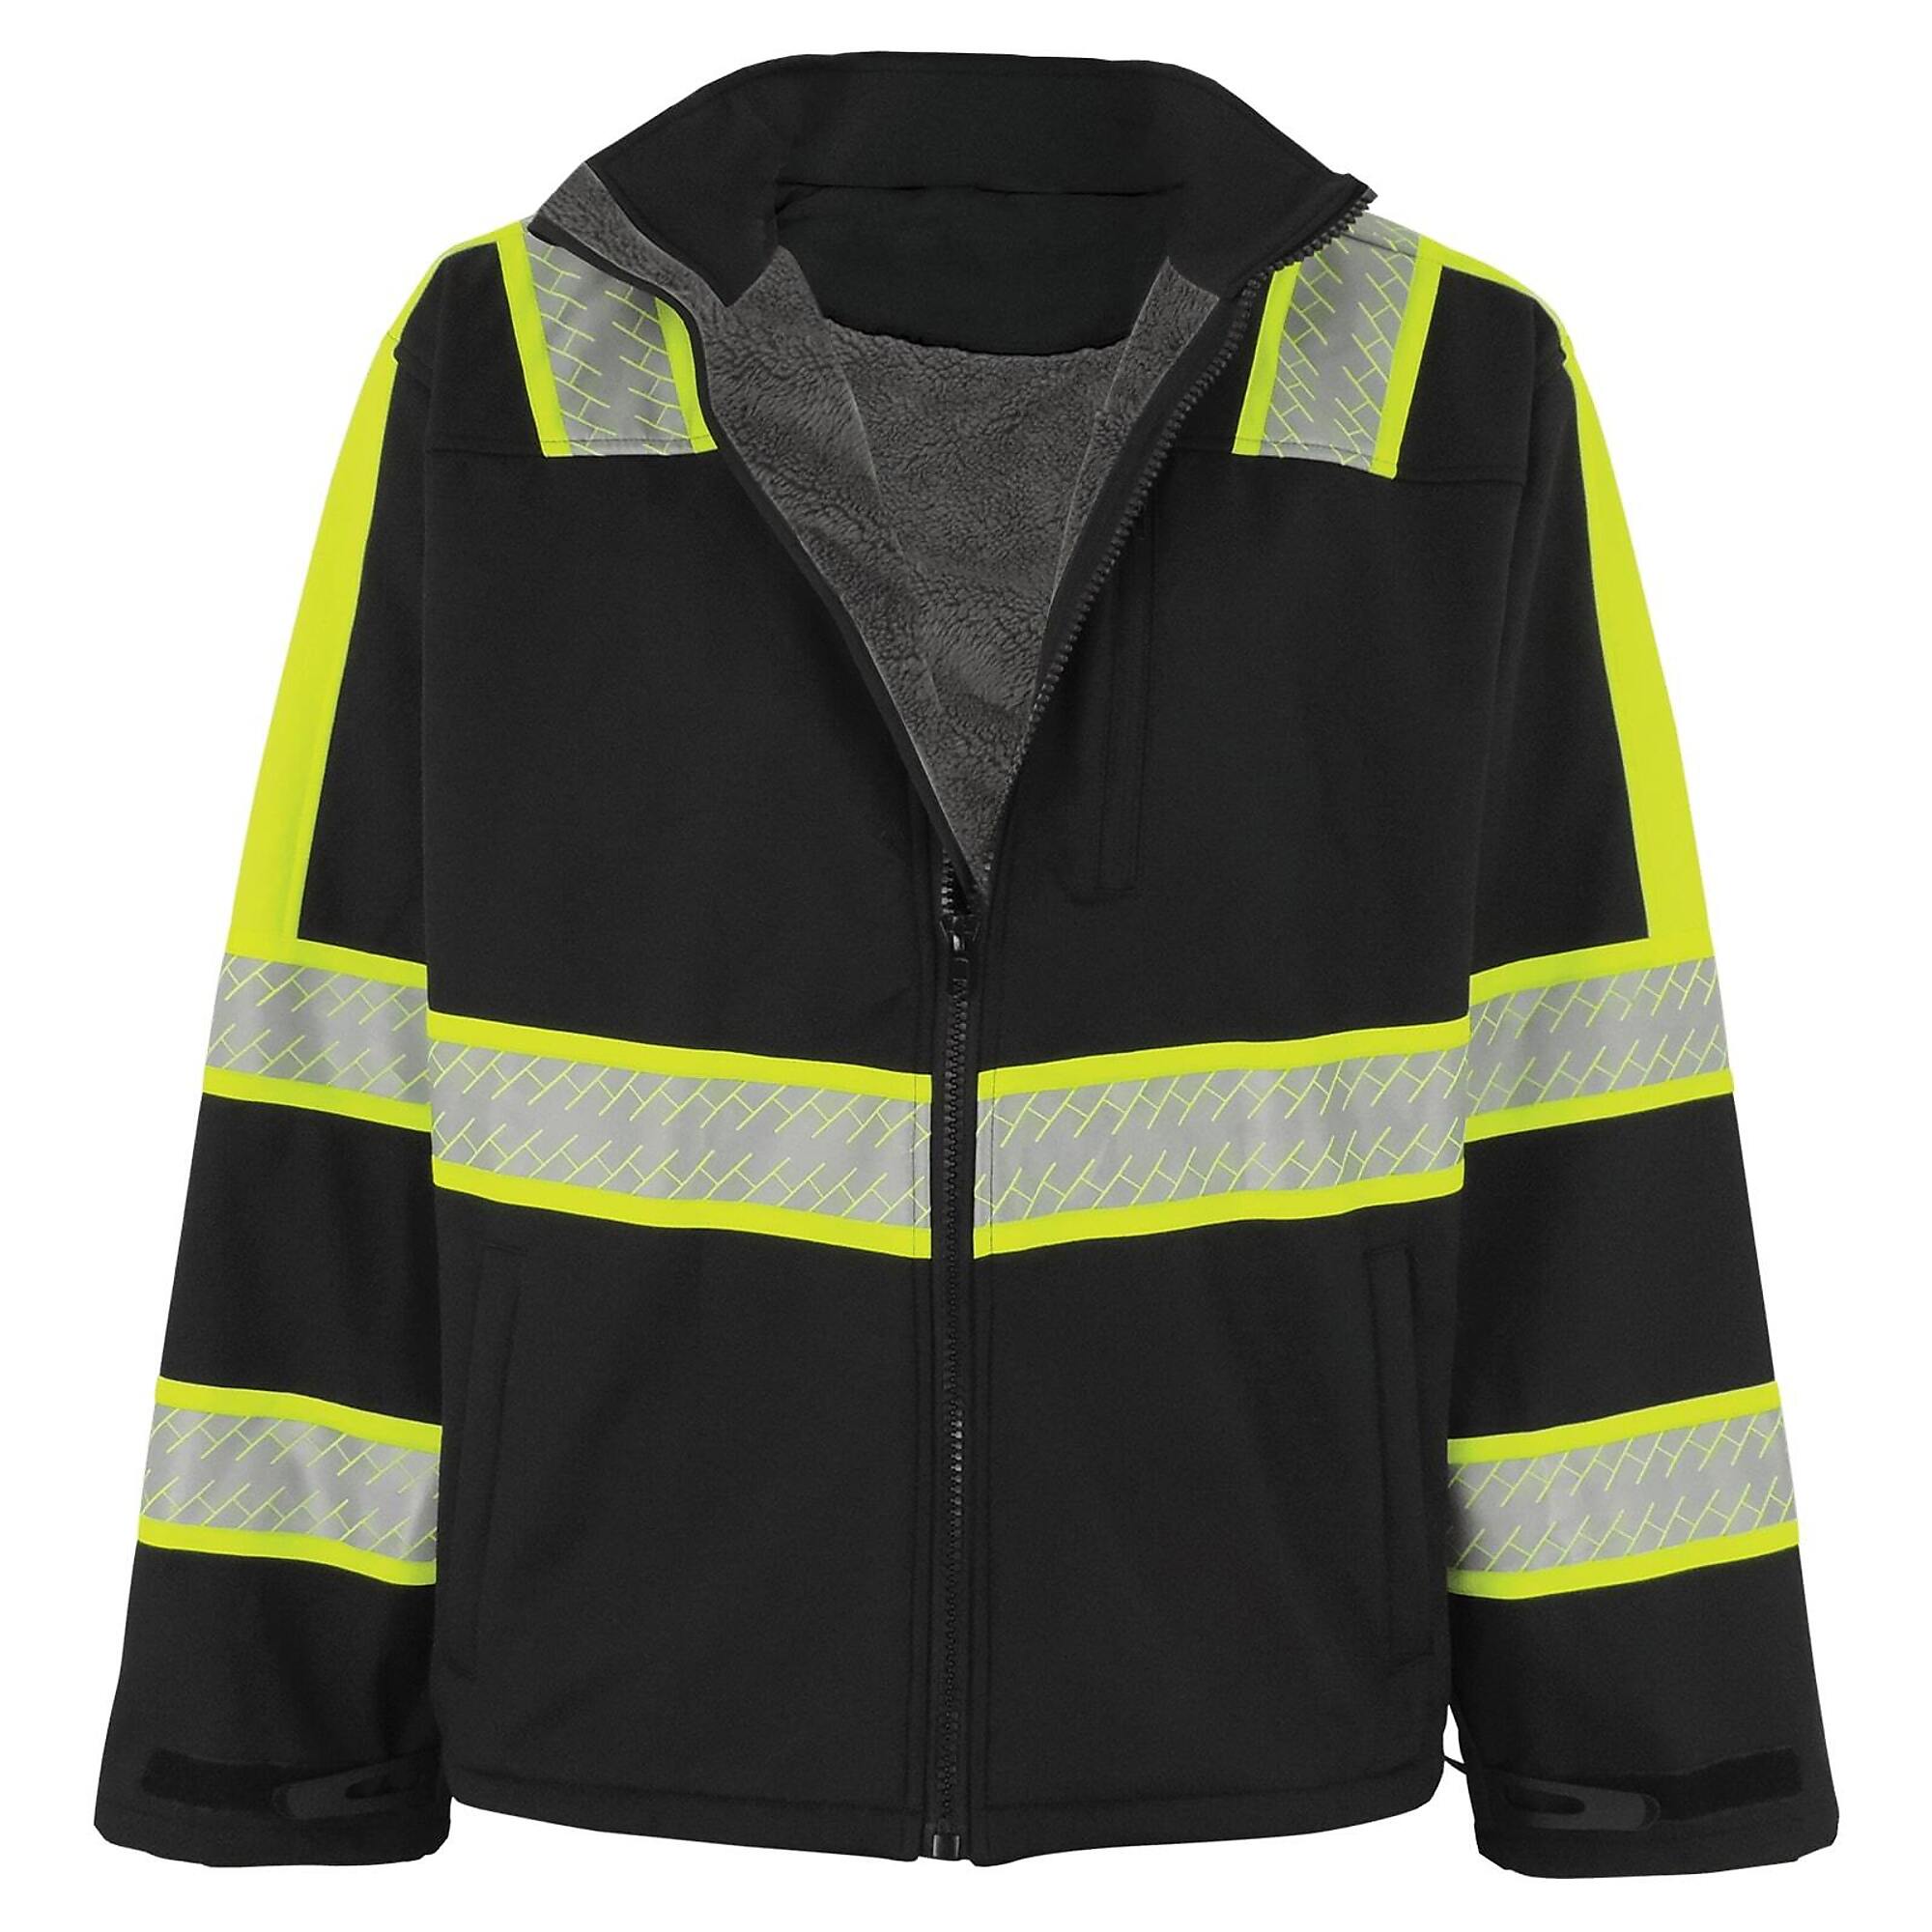 FrogWear, Prem Enhanced Visibility Black Sherpa-Lined Jacket, Size XLT, Color Black with Silver Reflective, Model EV-SJ1-XLT